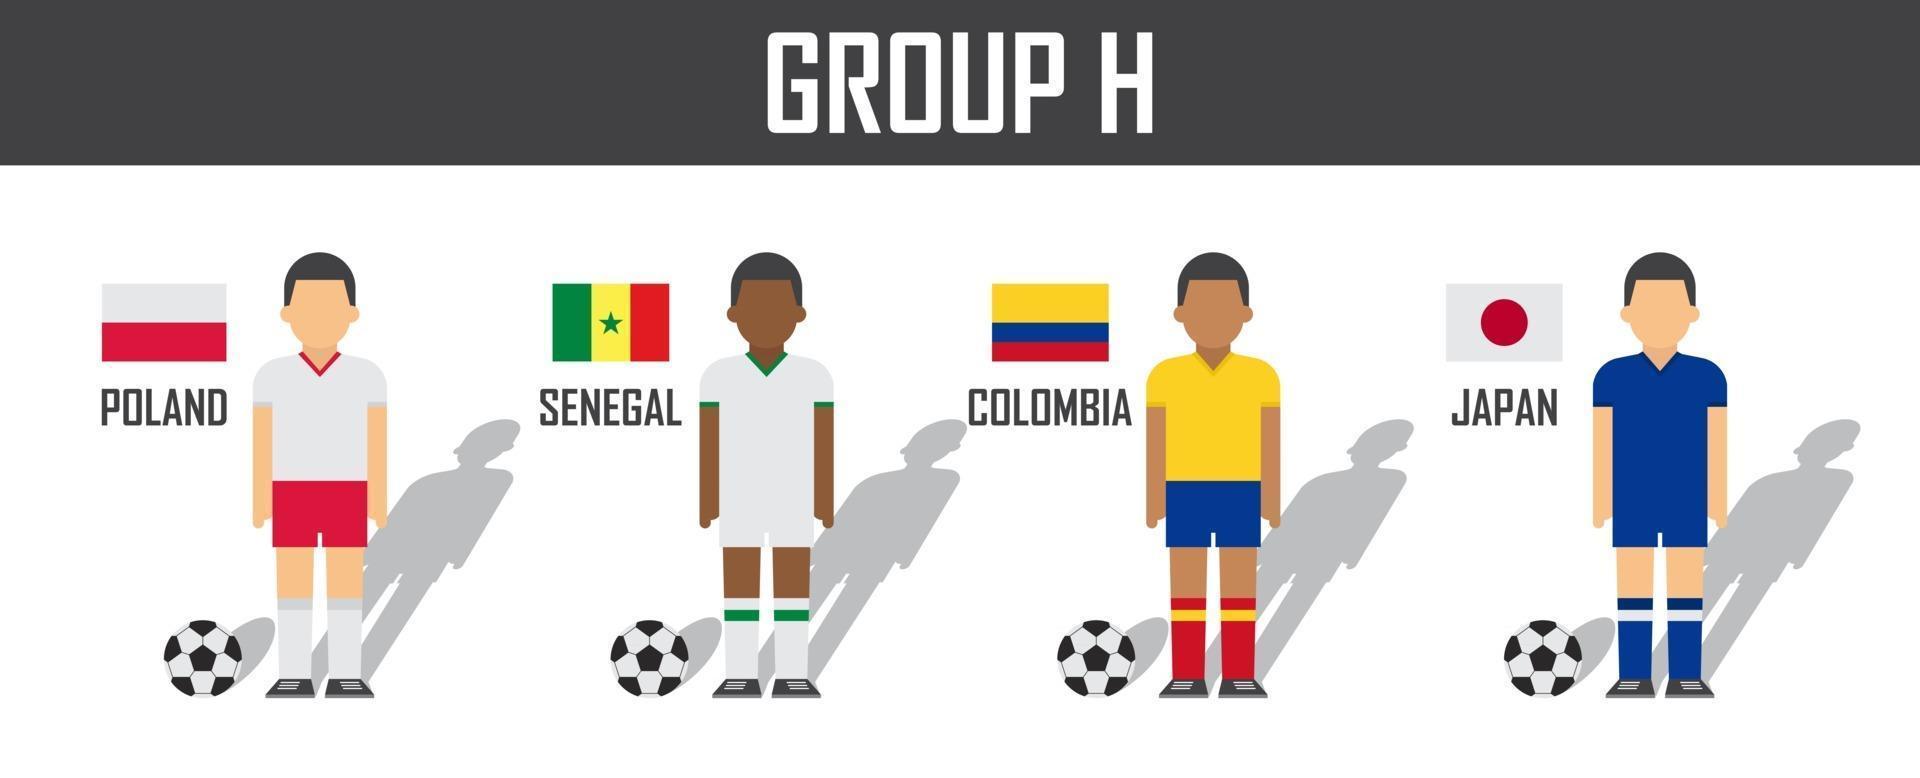 copa de fútbol 2018 equipo grupo h. futbolistas con uniforme de camiseta y banderas nacionales. vector para el torneo del campeonato mundial internacional.